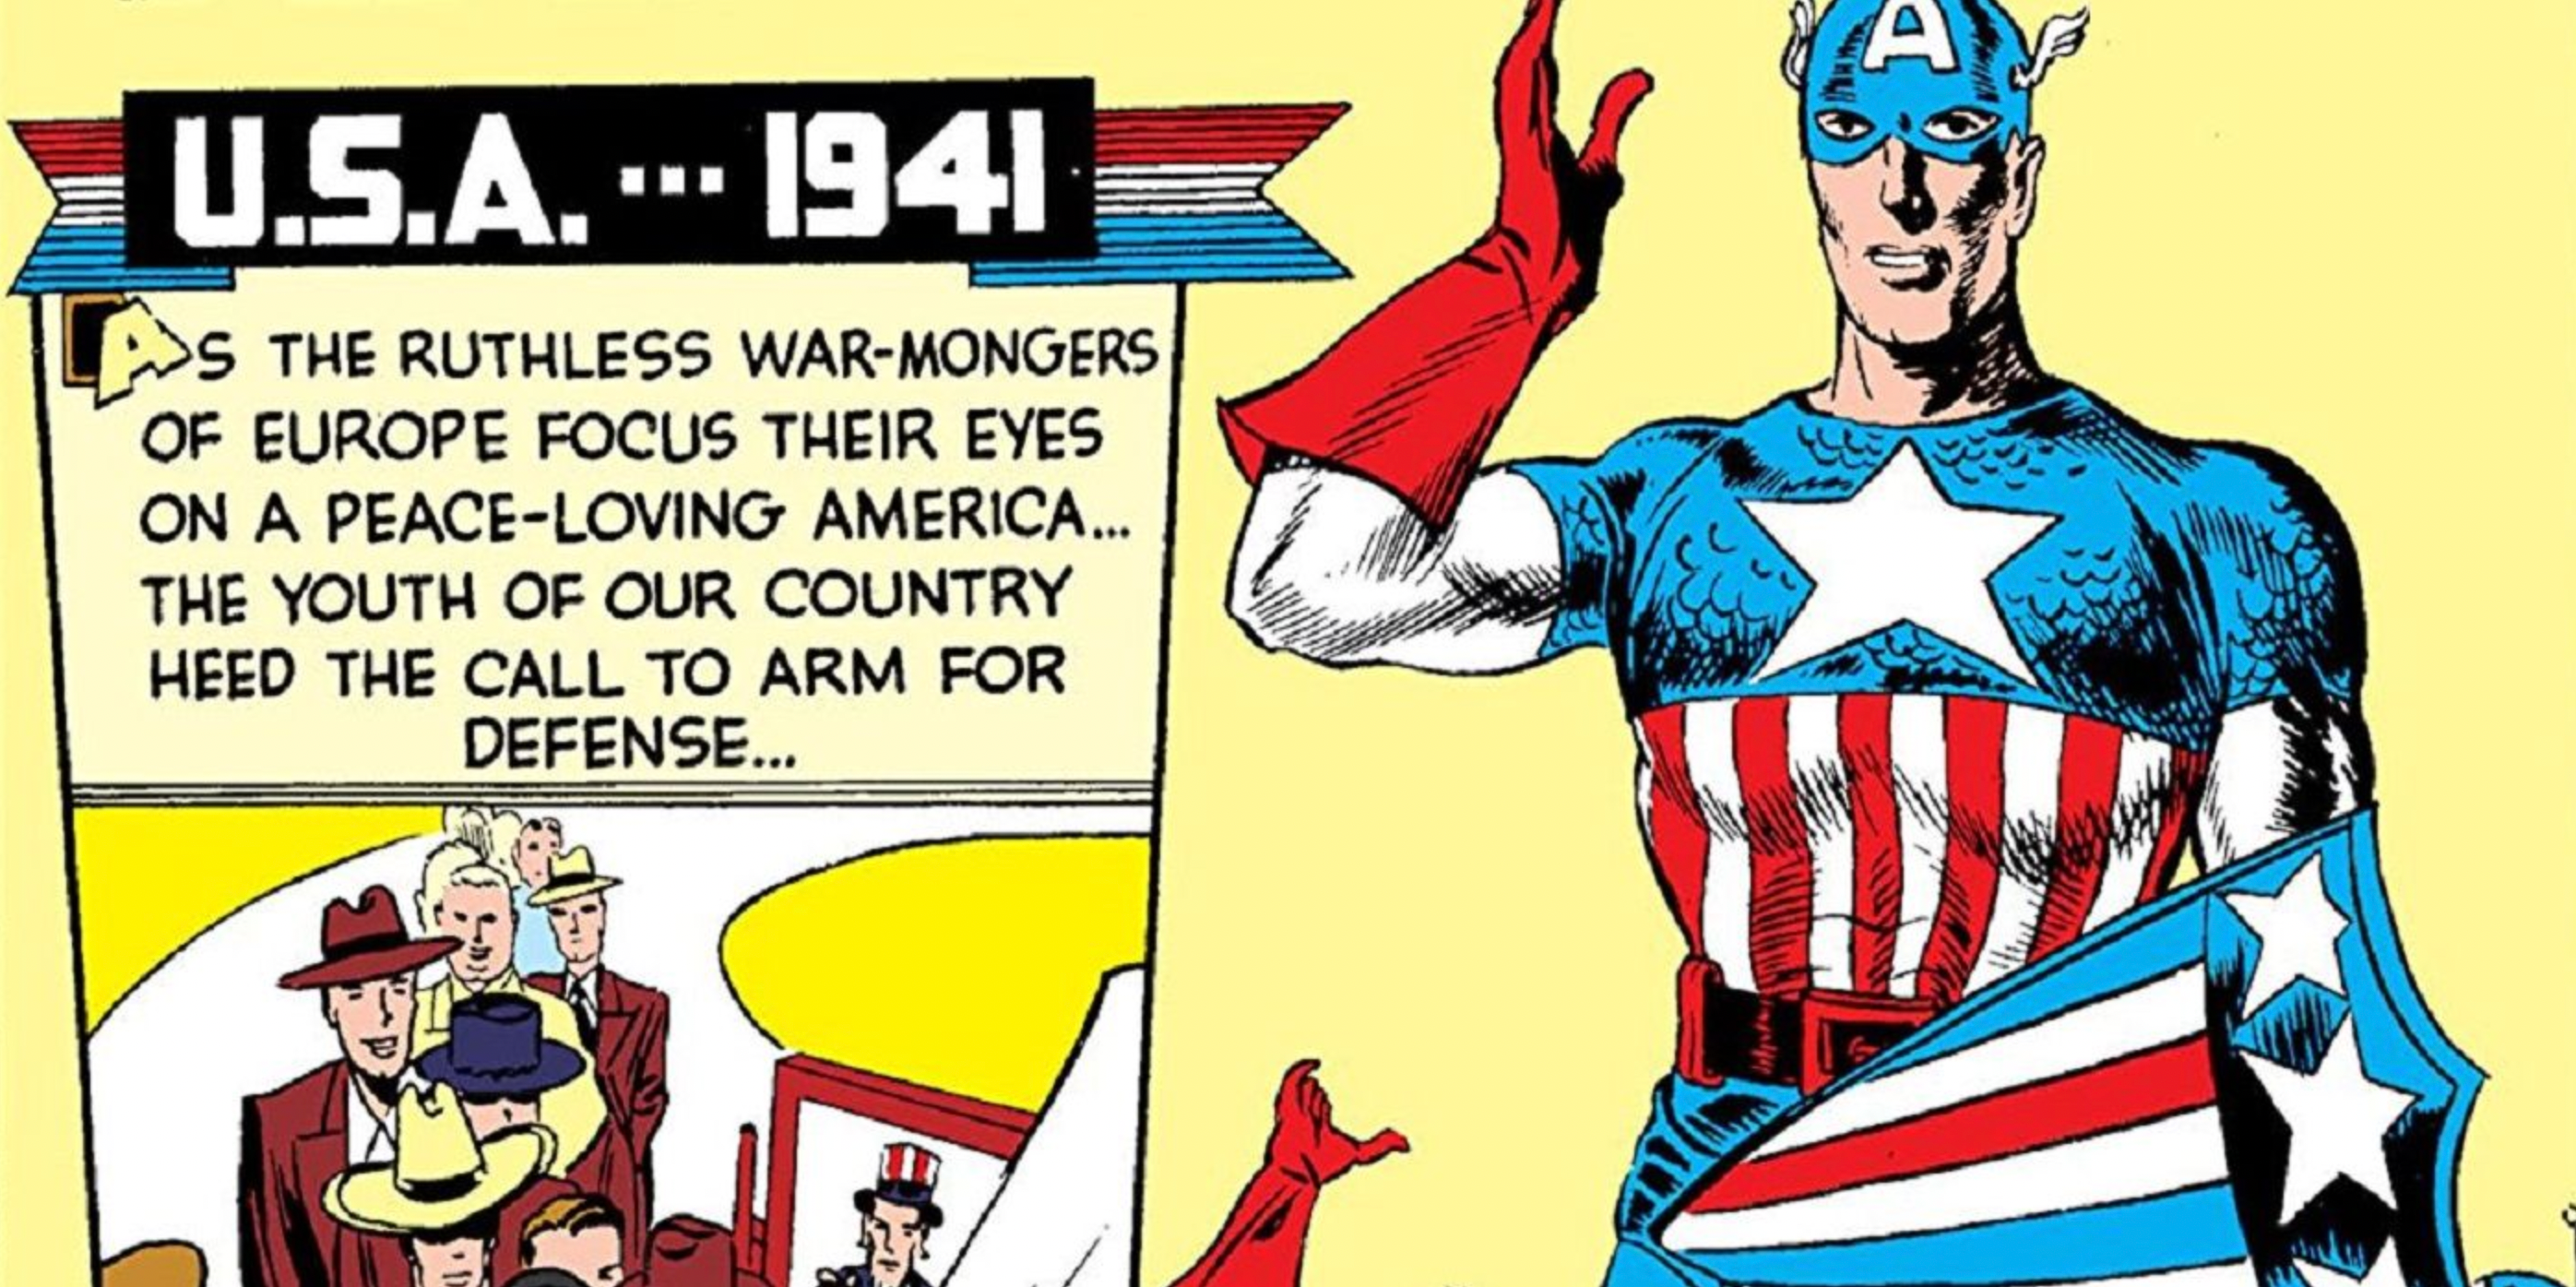 Captain America in 1941